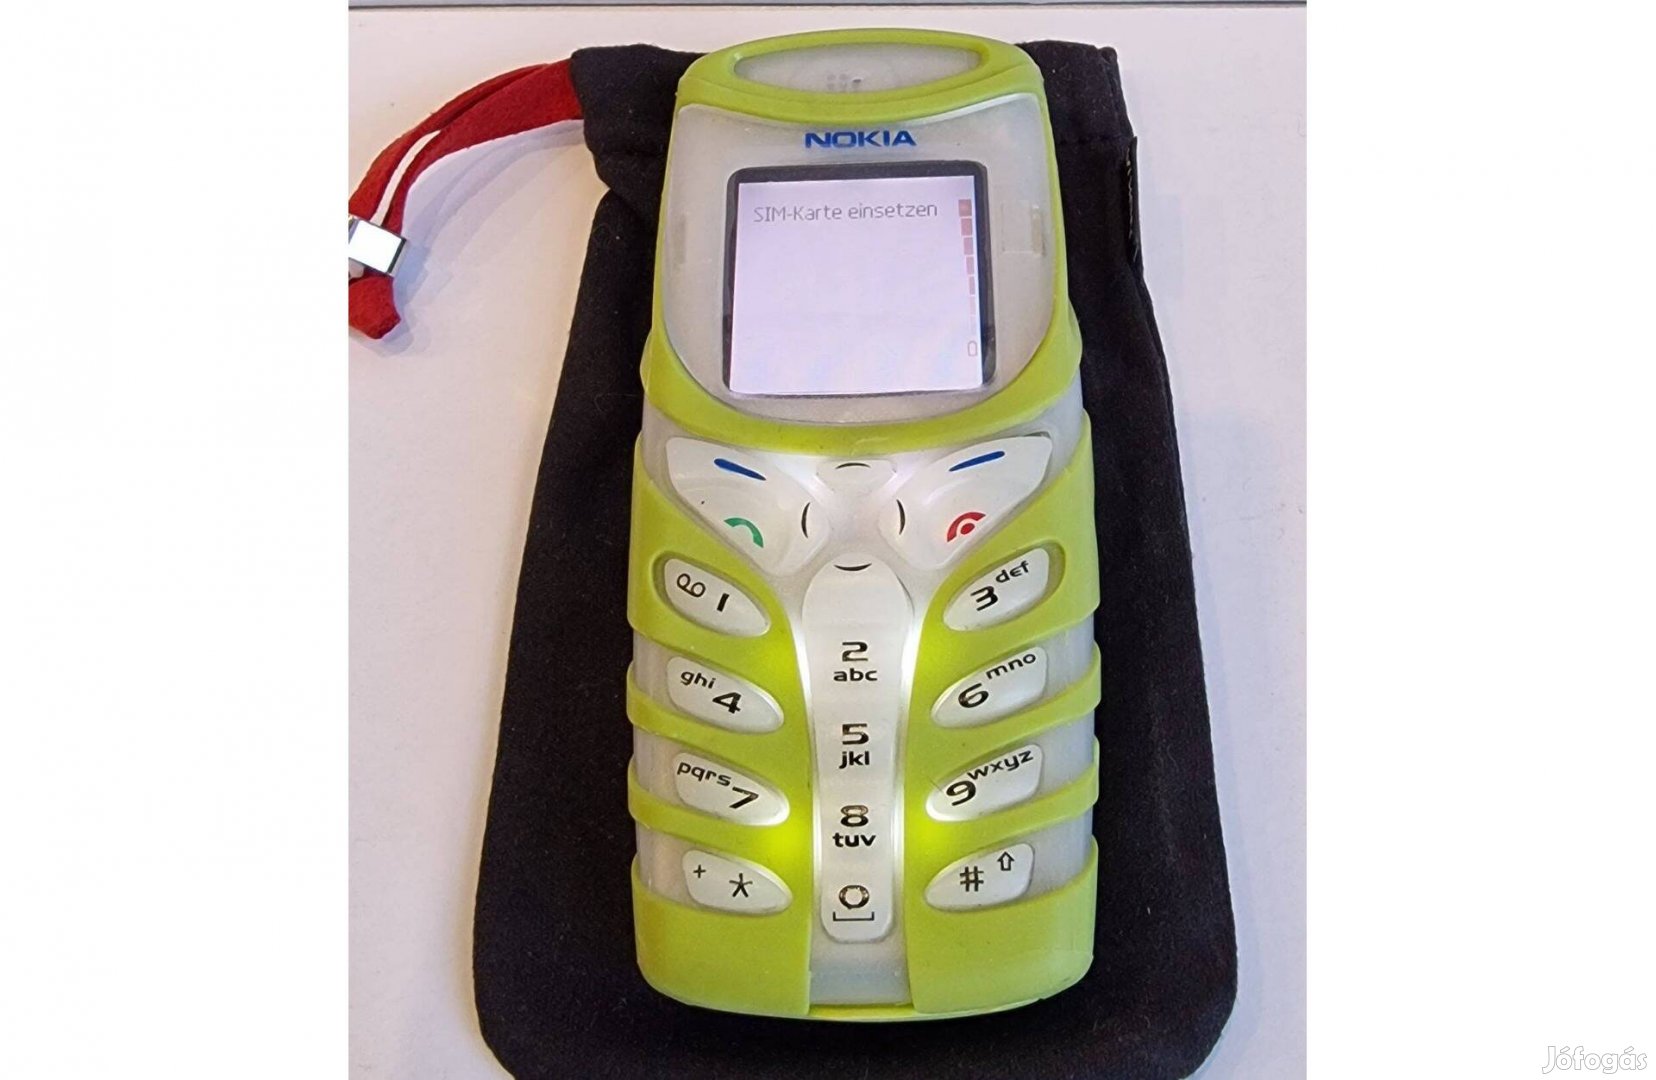 Nokia 5100 független, fóliás burkolattal, tökéletes működéssel